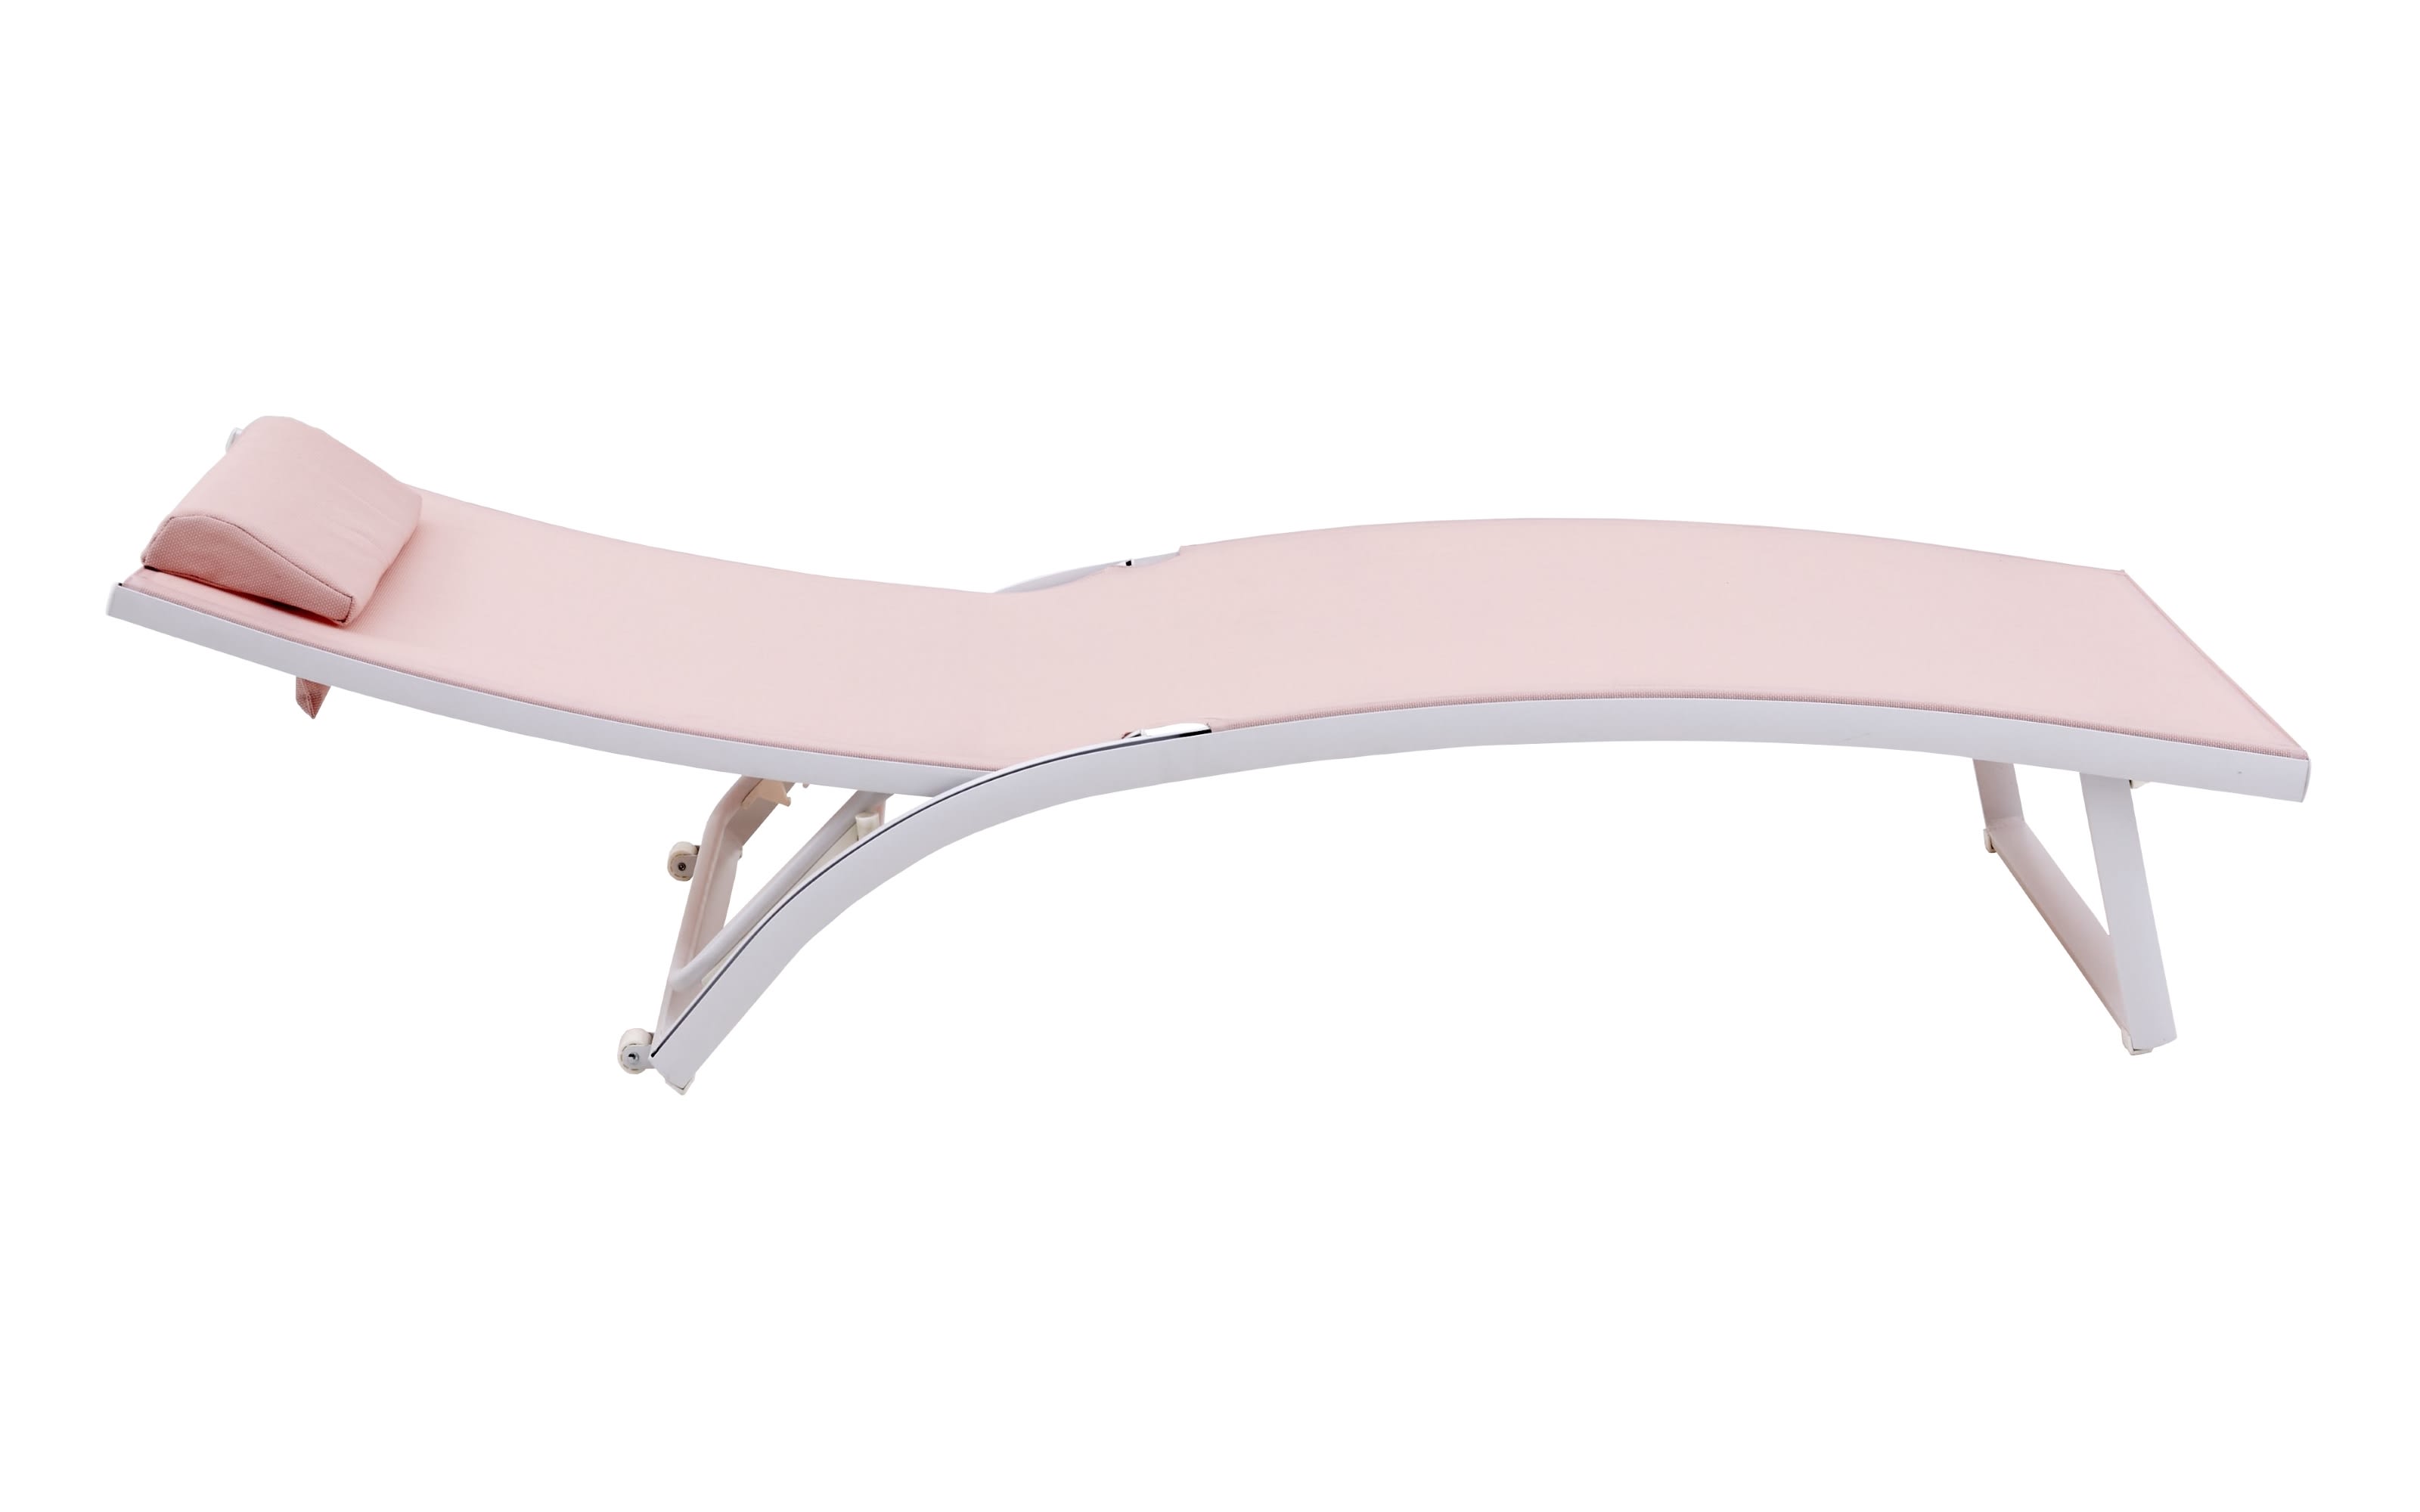 Gartenliege Diana, Bezug in pink, Gestell aus Aluminium in weiß, inkl. Kissen